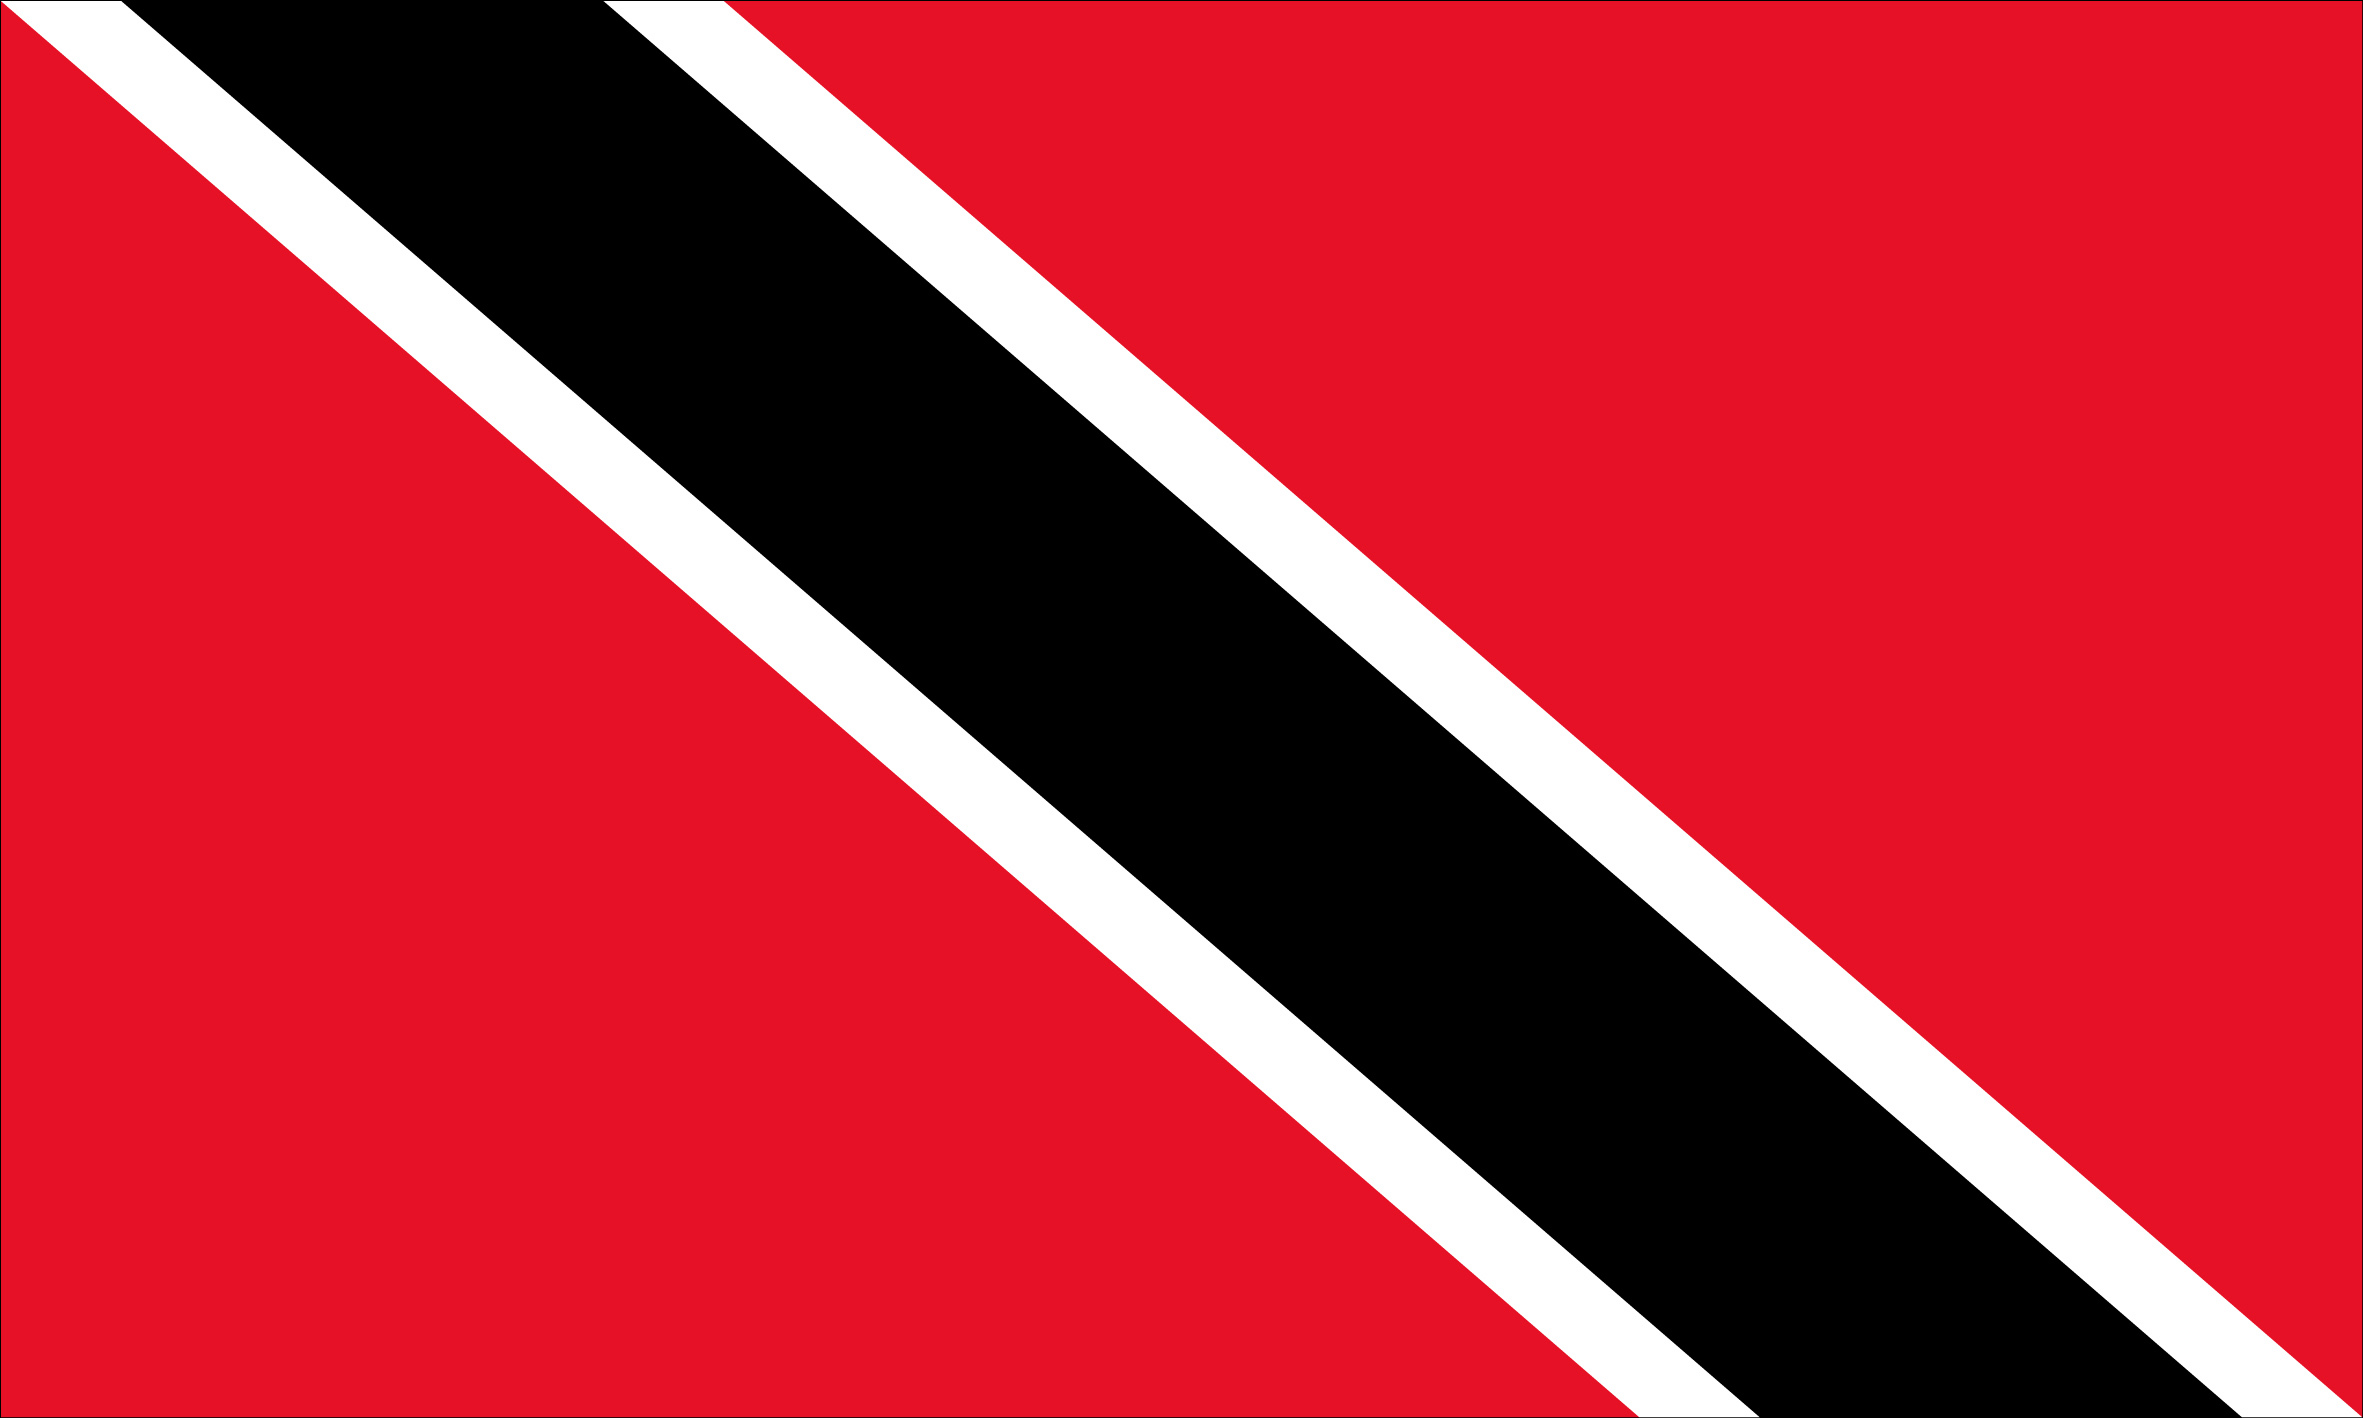 Trinidad y Tobago